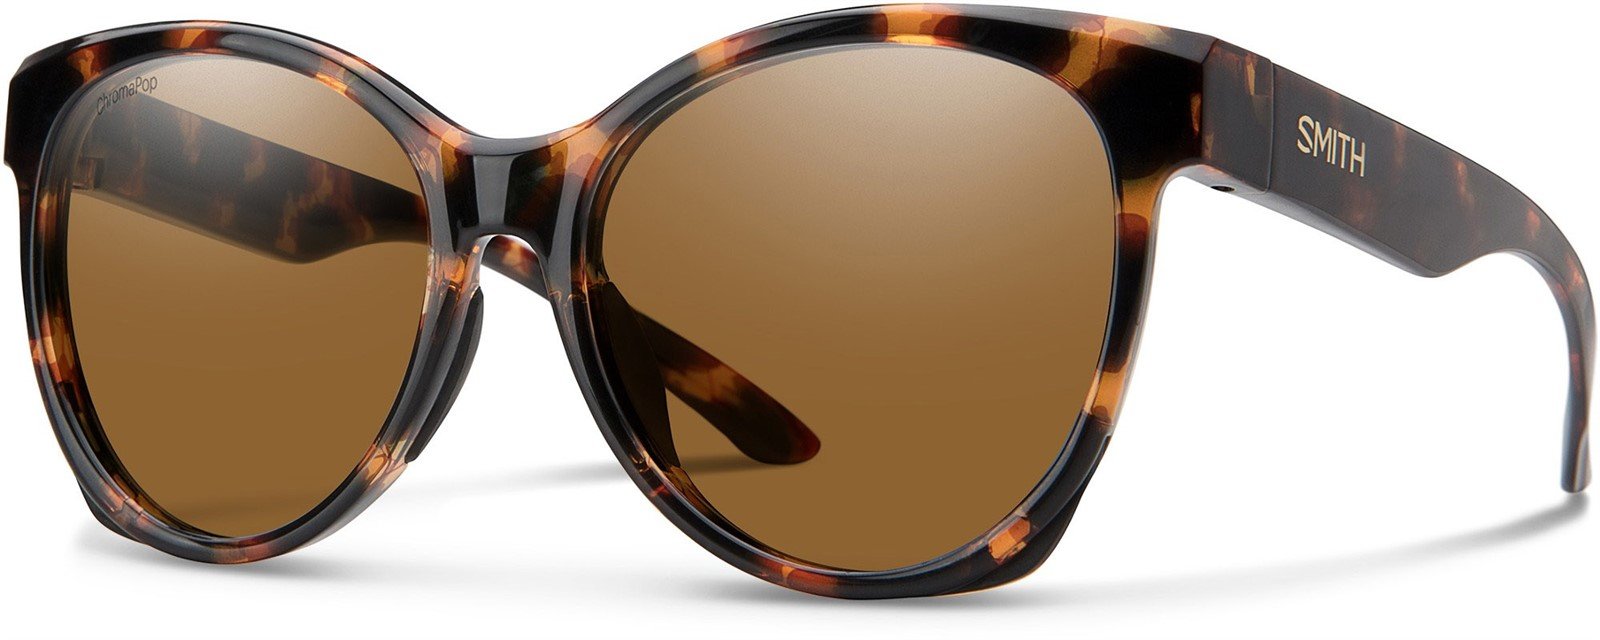 Smith Fairground Sunglasses Dark Tortoise Frame, Polarized Brown Lens New